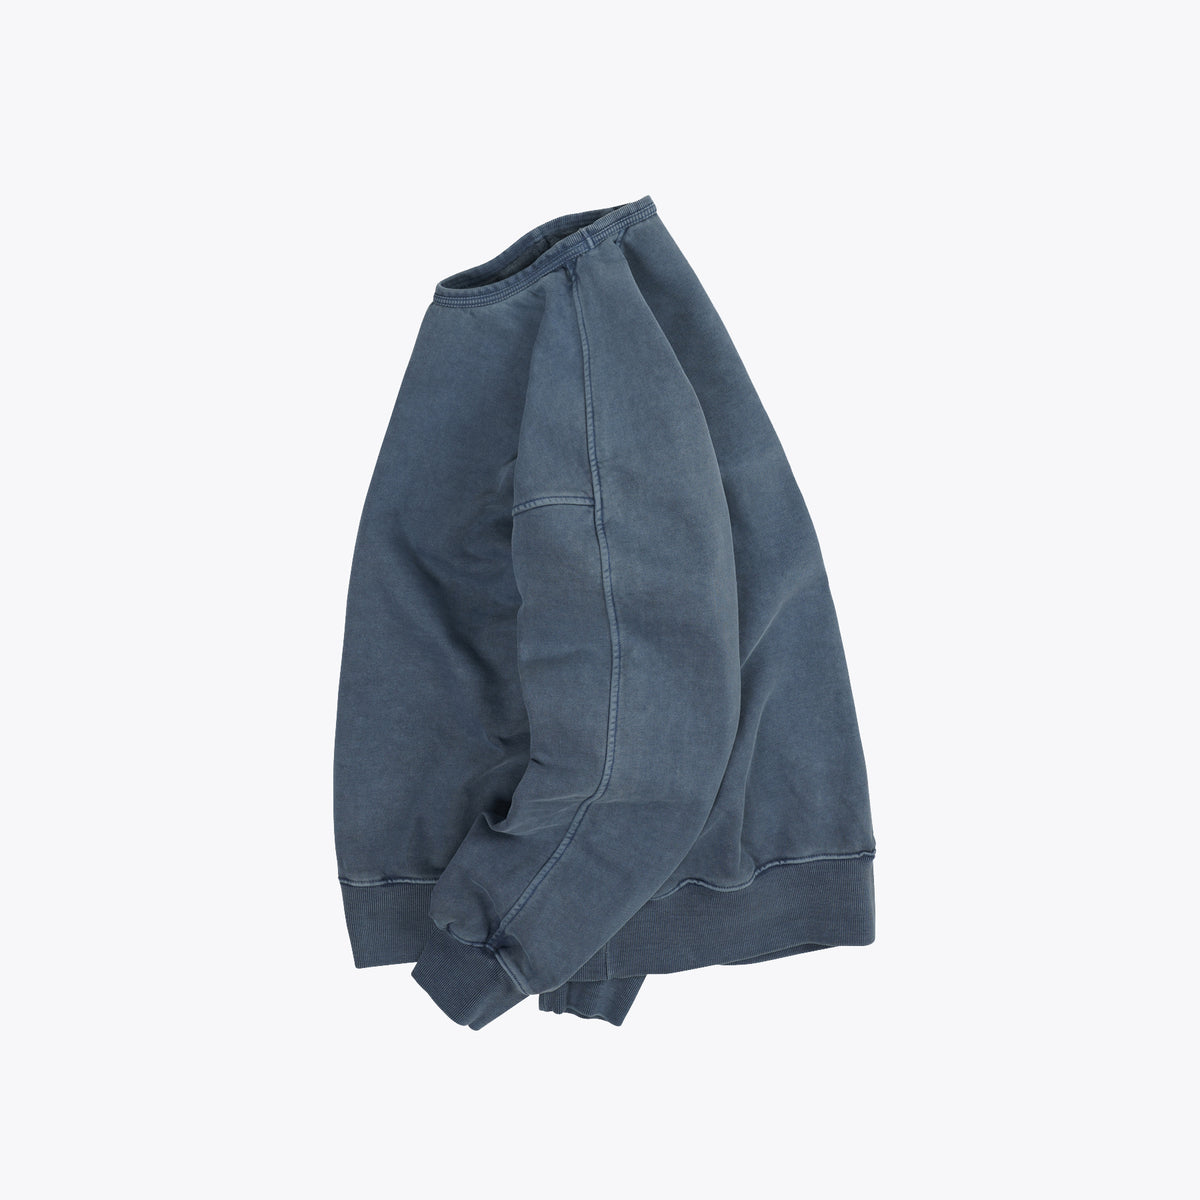 FrizmWORKS OG Pigment Dyed Sweatshirt 002 - Blue